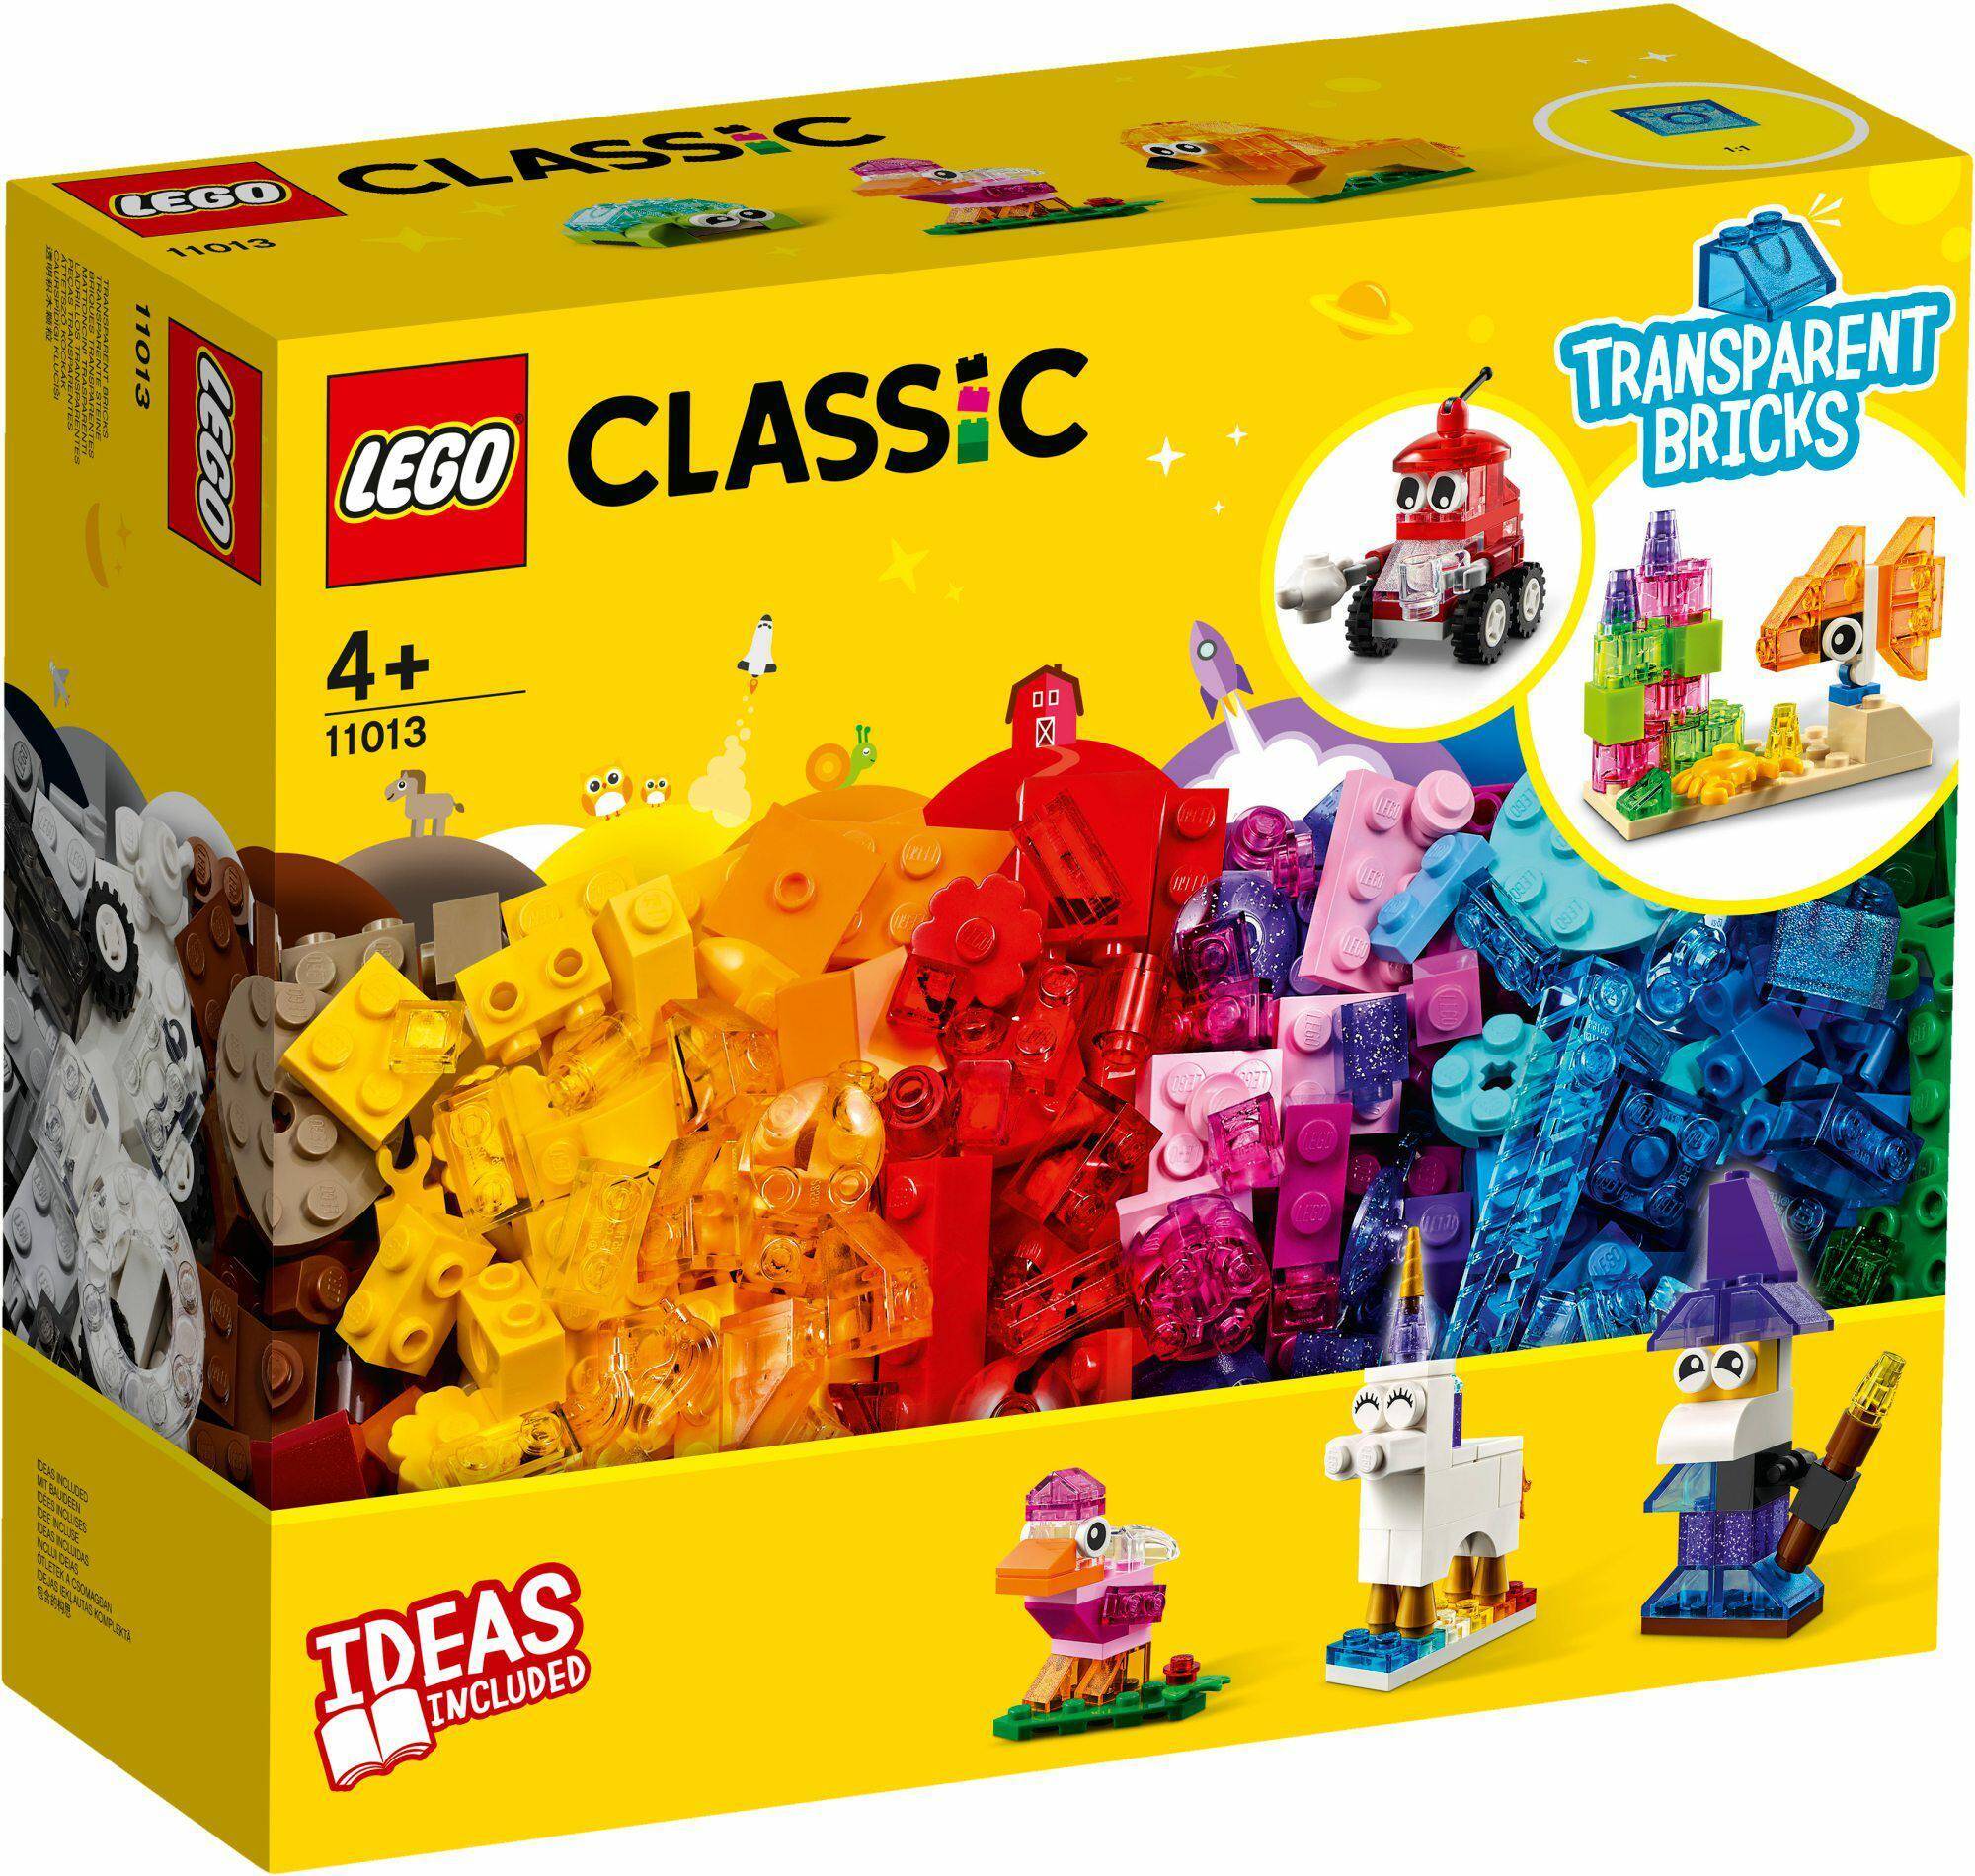 11013 LEGO CLASSIC PRZEZROCZYSTE KLOCKI